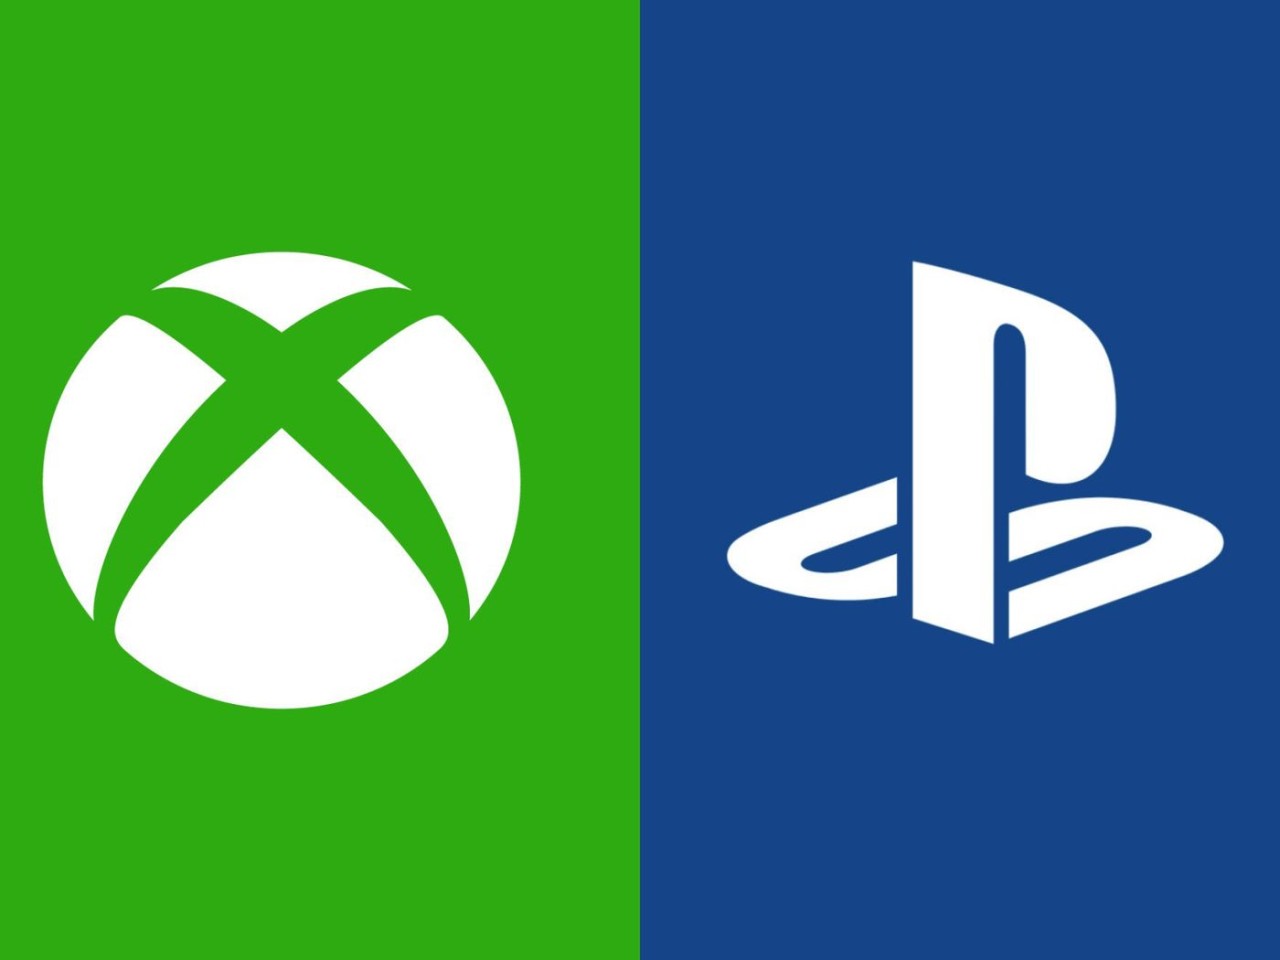 Xbox & PlayStation